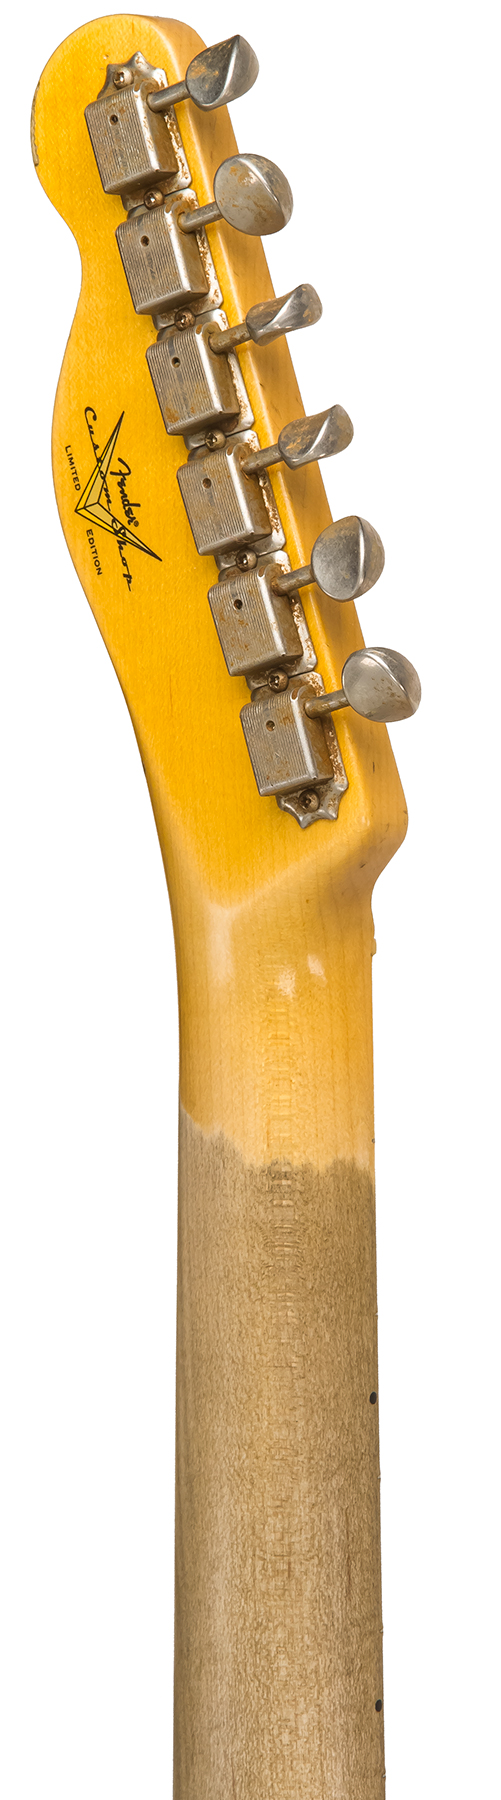 Fender Custom Shop Tele Custom 1963 2020 Ltd Rw #cz545983 - Relic Chartreuse Sparkle - Guitare Électrique Forme Tel - Variation 5